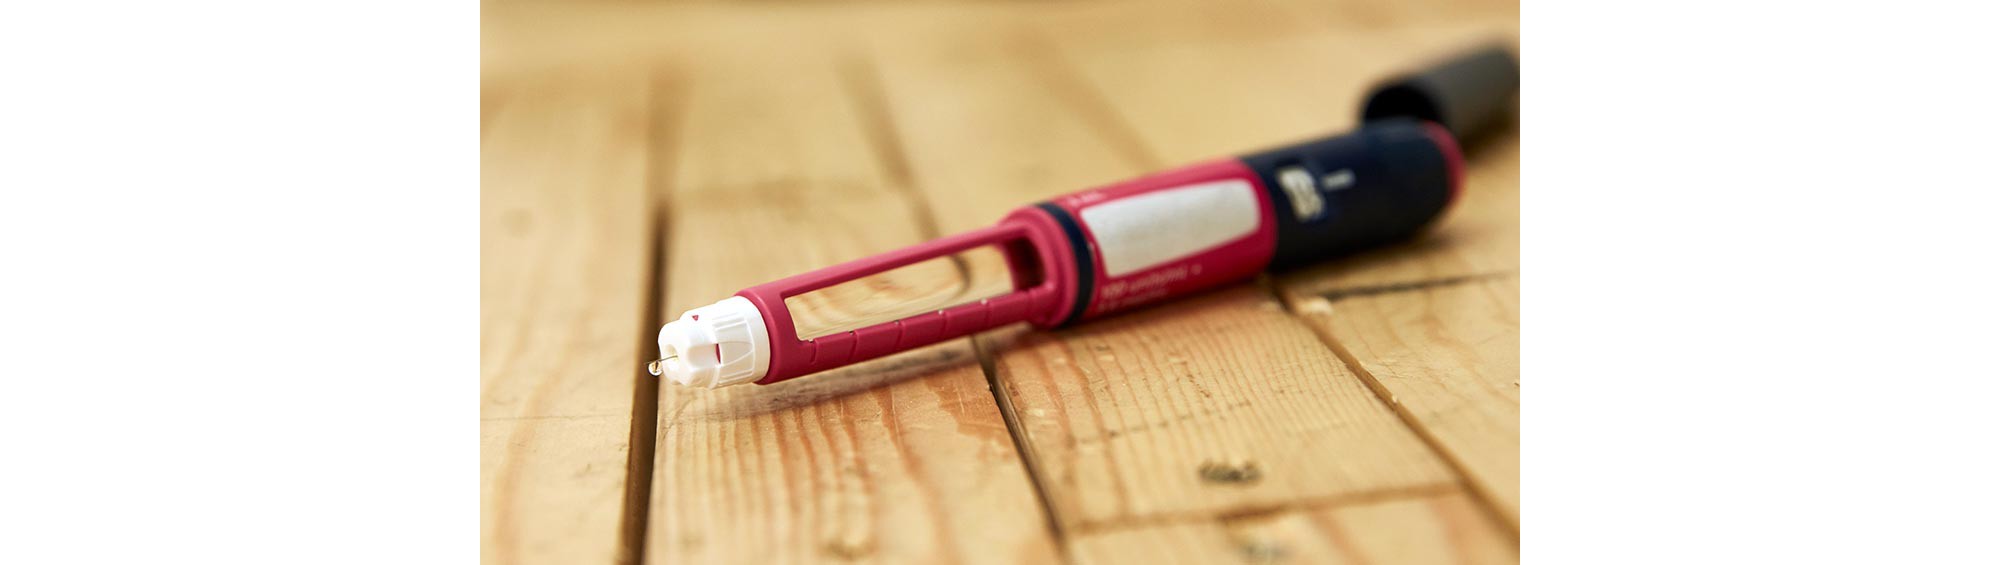 Buy NovoFine Plus 32 Gauge Pen Needles 4mm